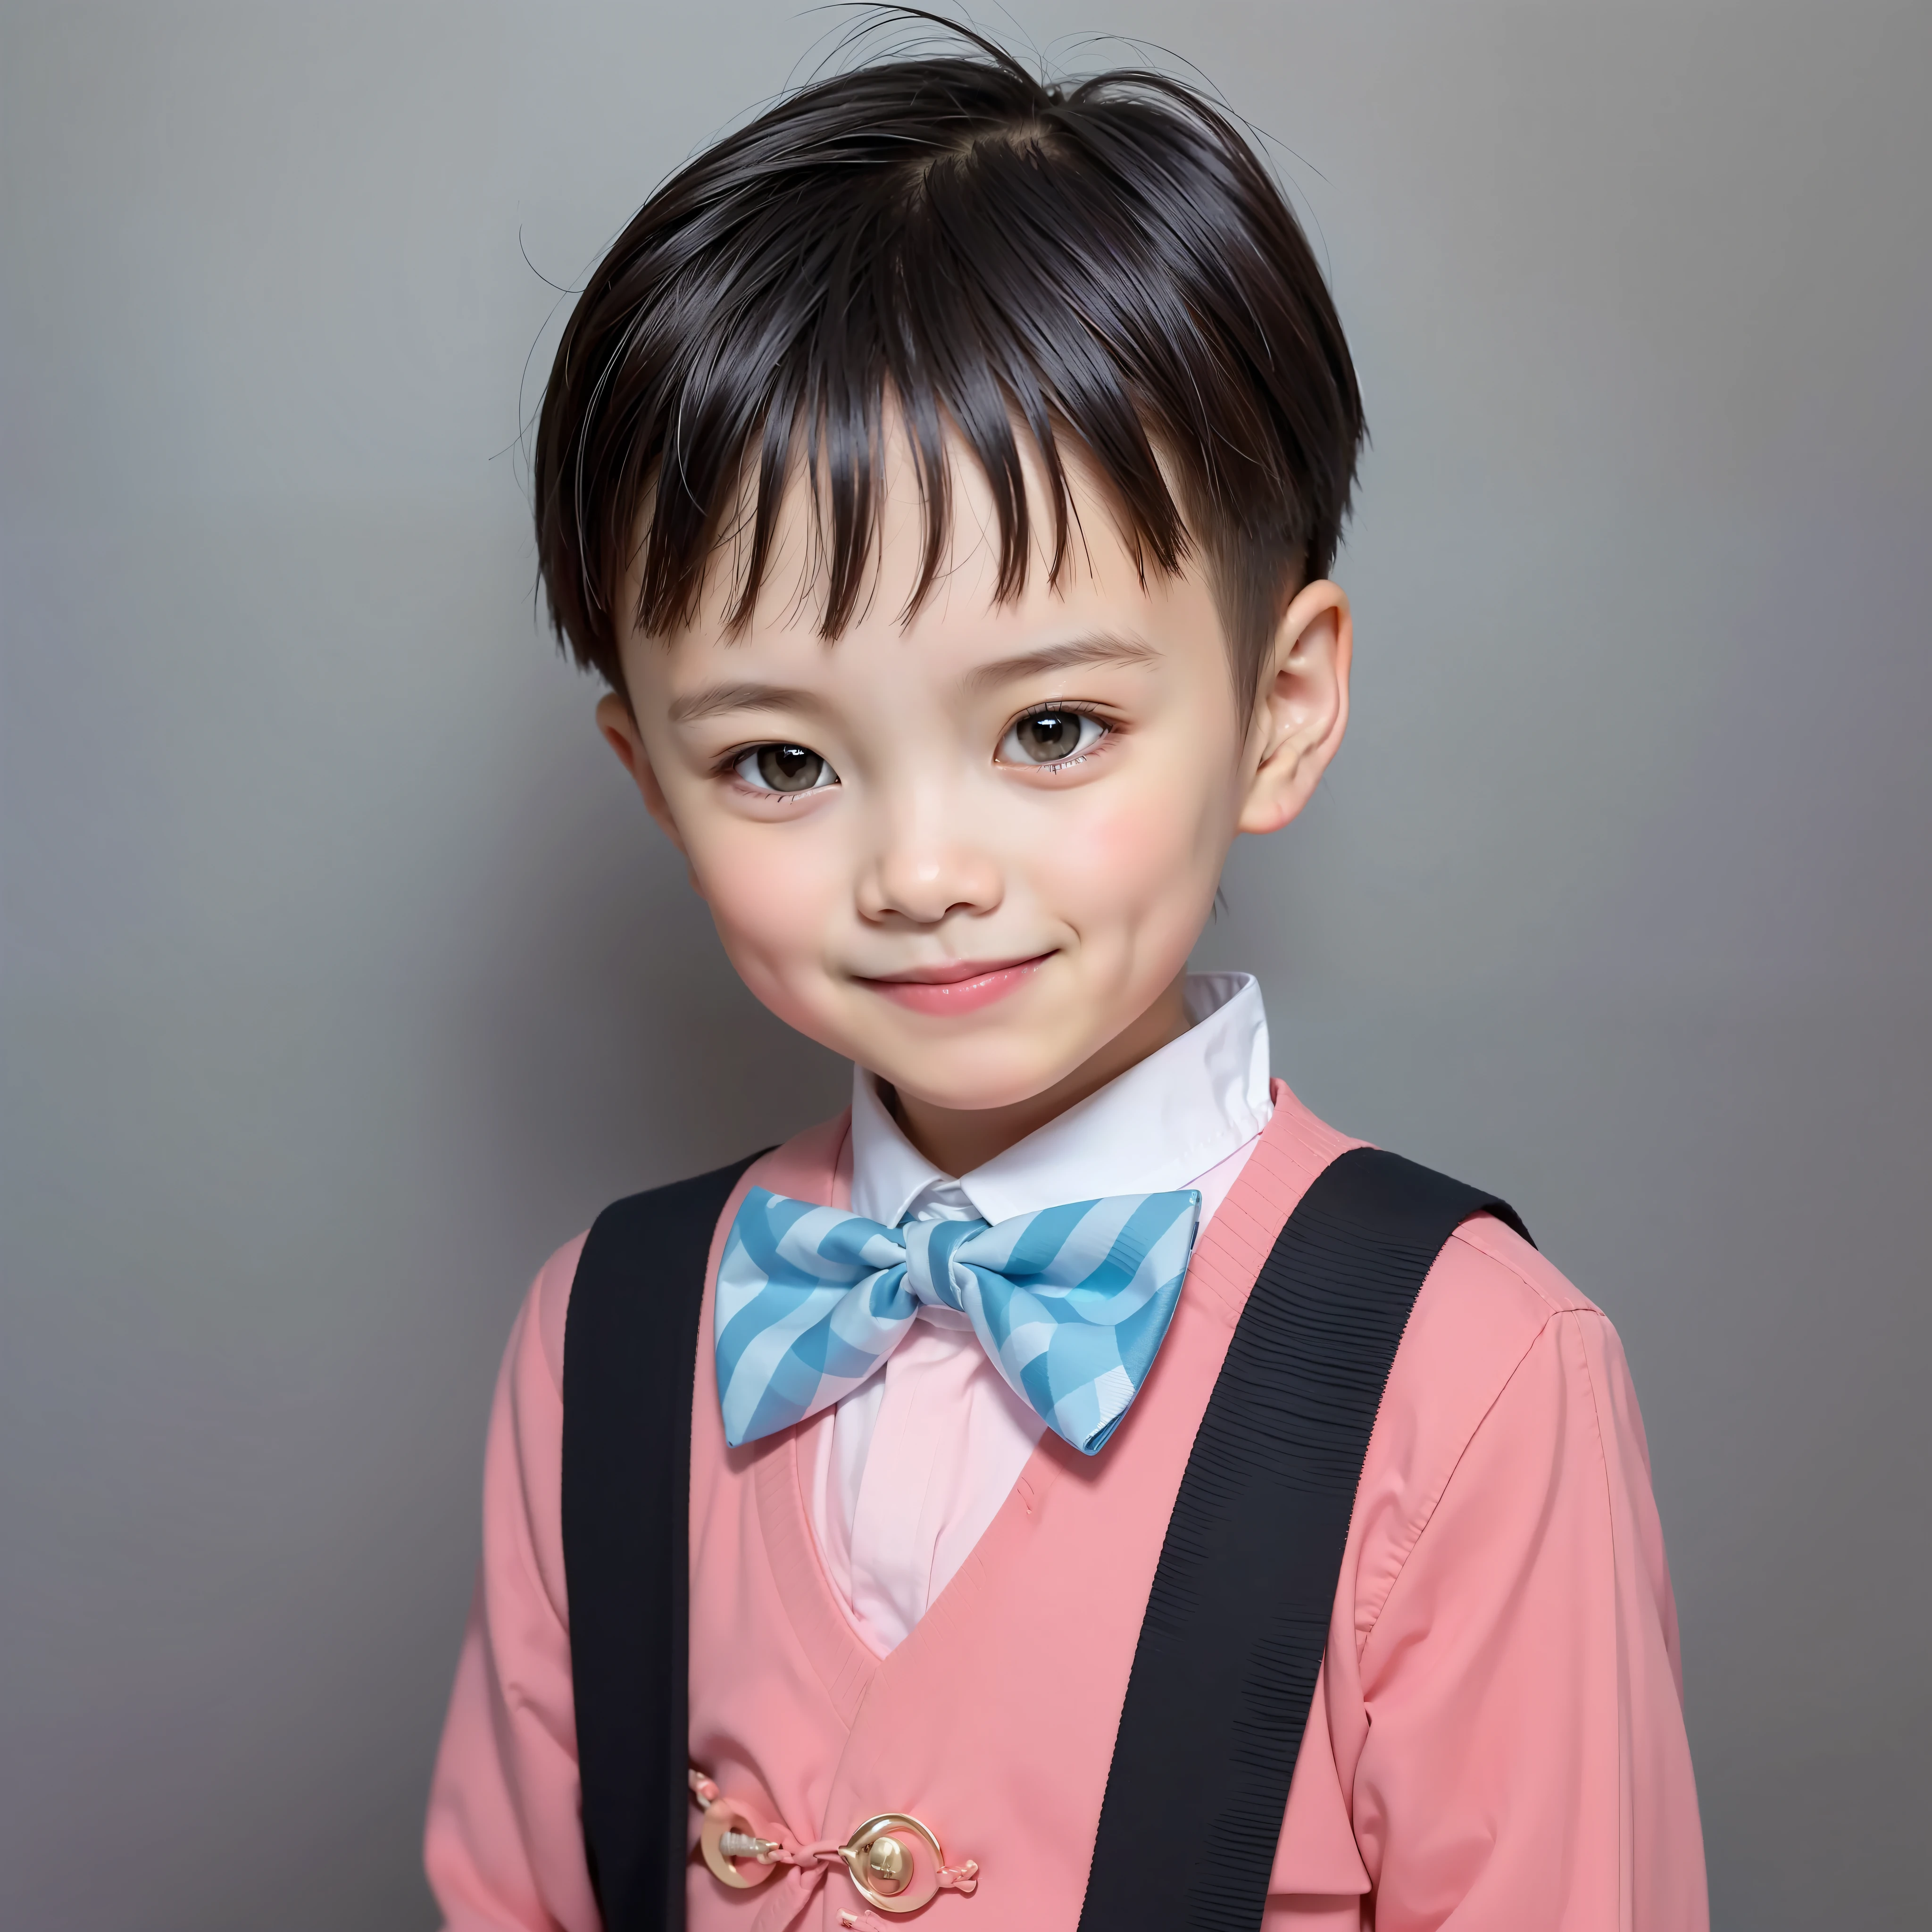 现代风格, 白色背景, 中国儿童证件照, 英俊的, 微笑的男孩, 黑眼睛, 平头, 领结